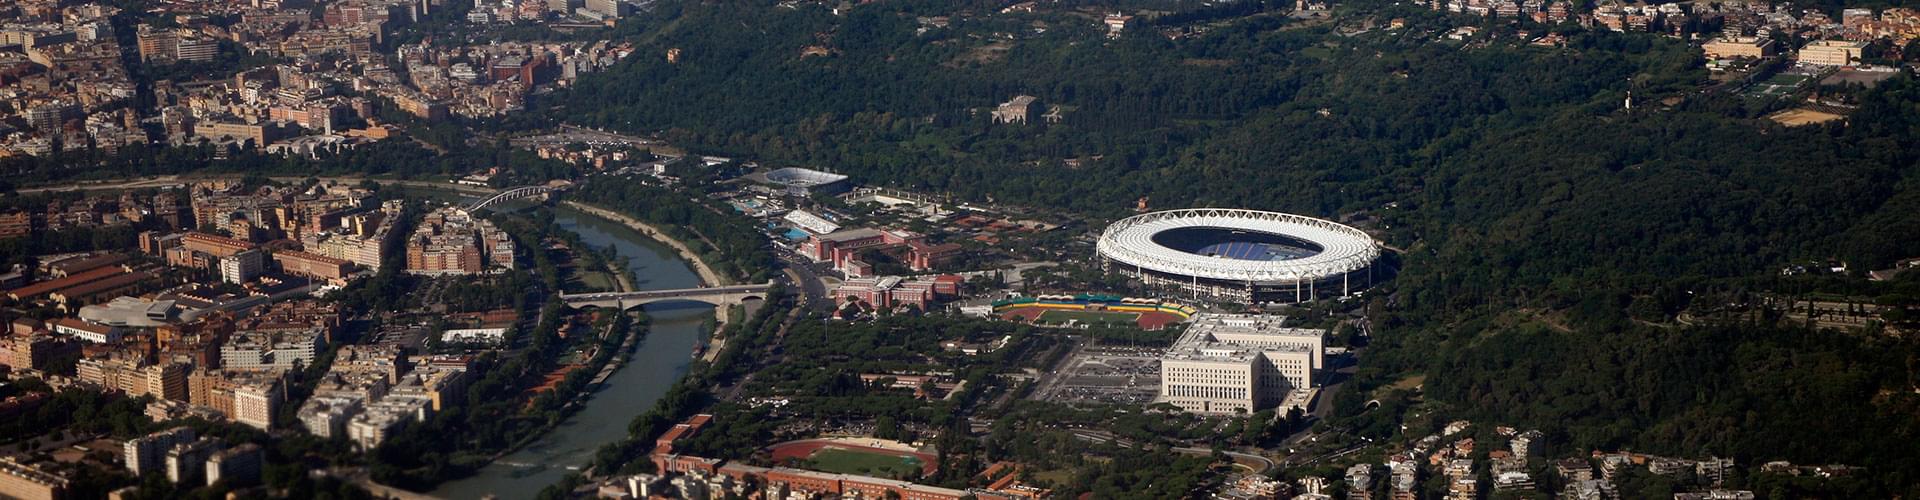 Stadio Olimpico Rome, olympic stadium rome, stadio dei cipressi, stadio dei centomilla, italian sport venue